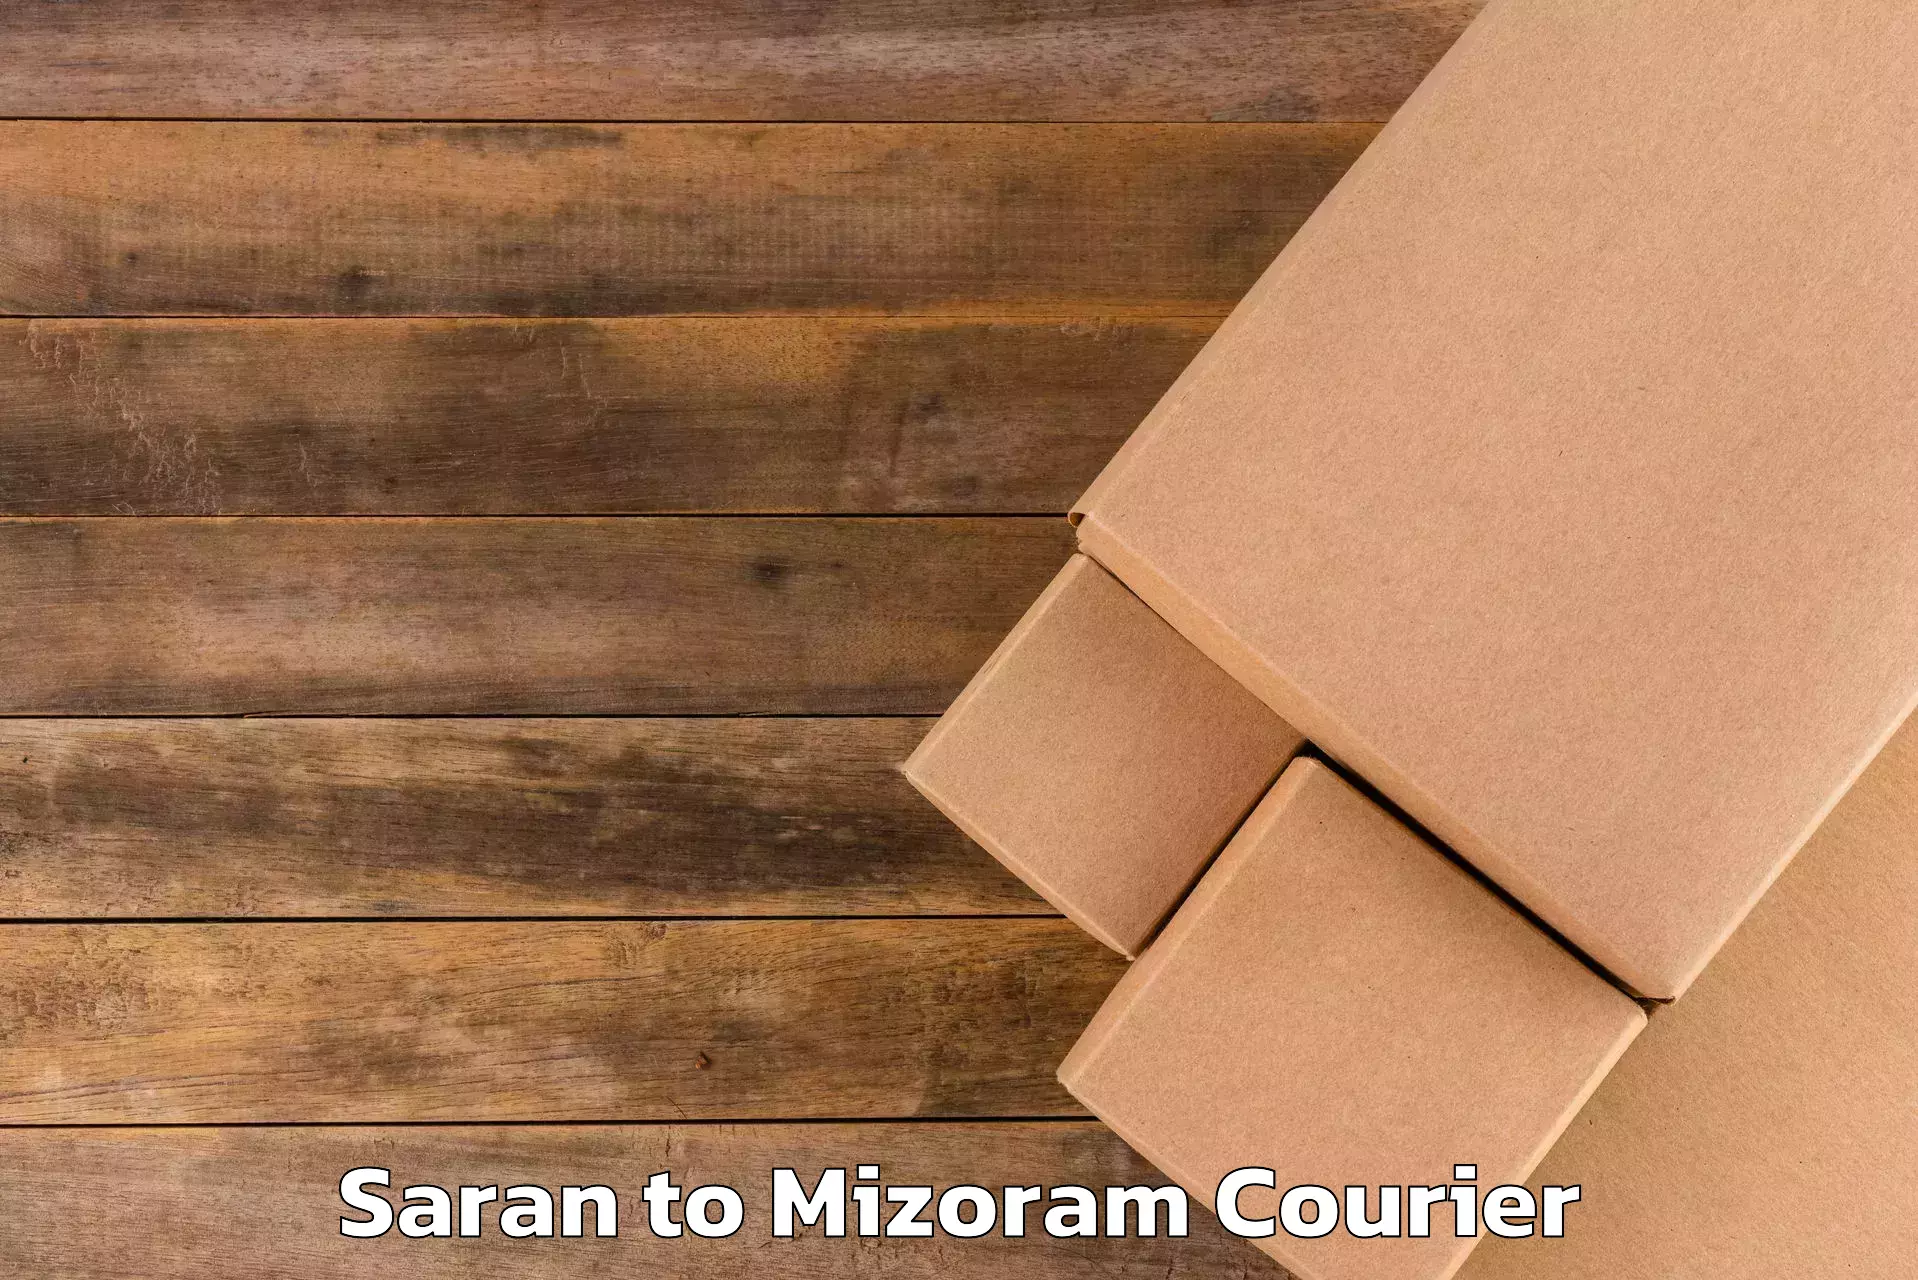 Luggage transit service Saran to Mizoram